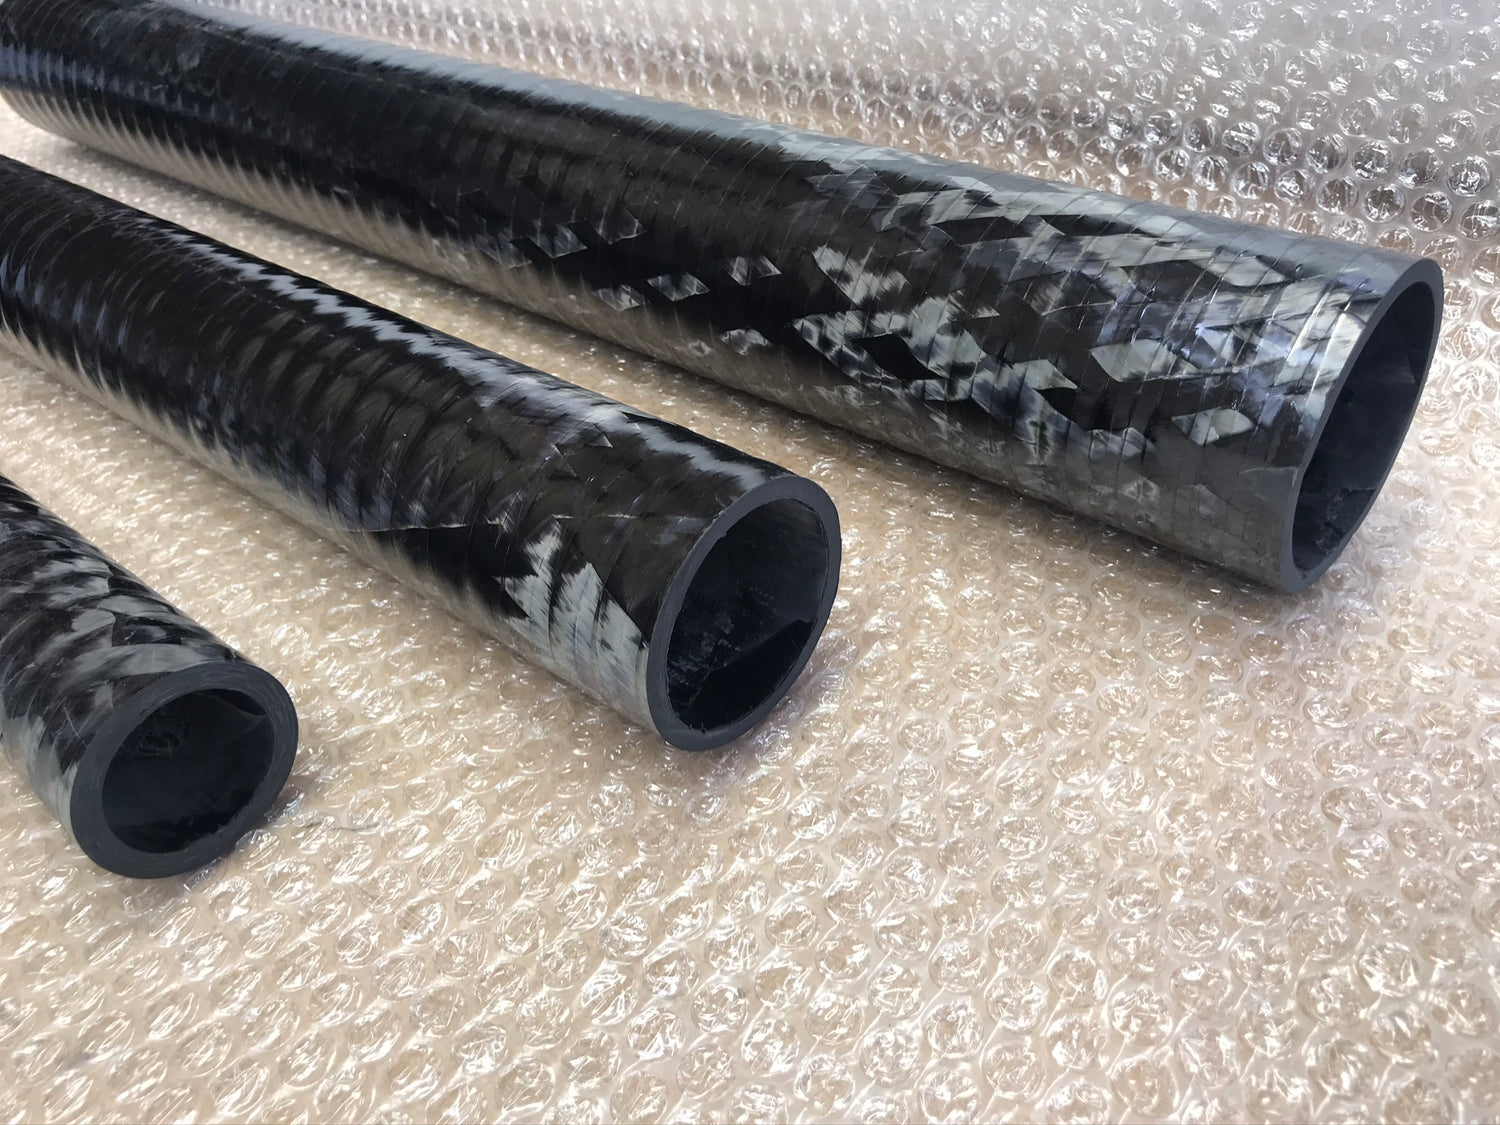 Filament wound carbon fibre tubes